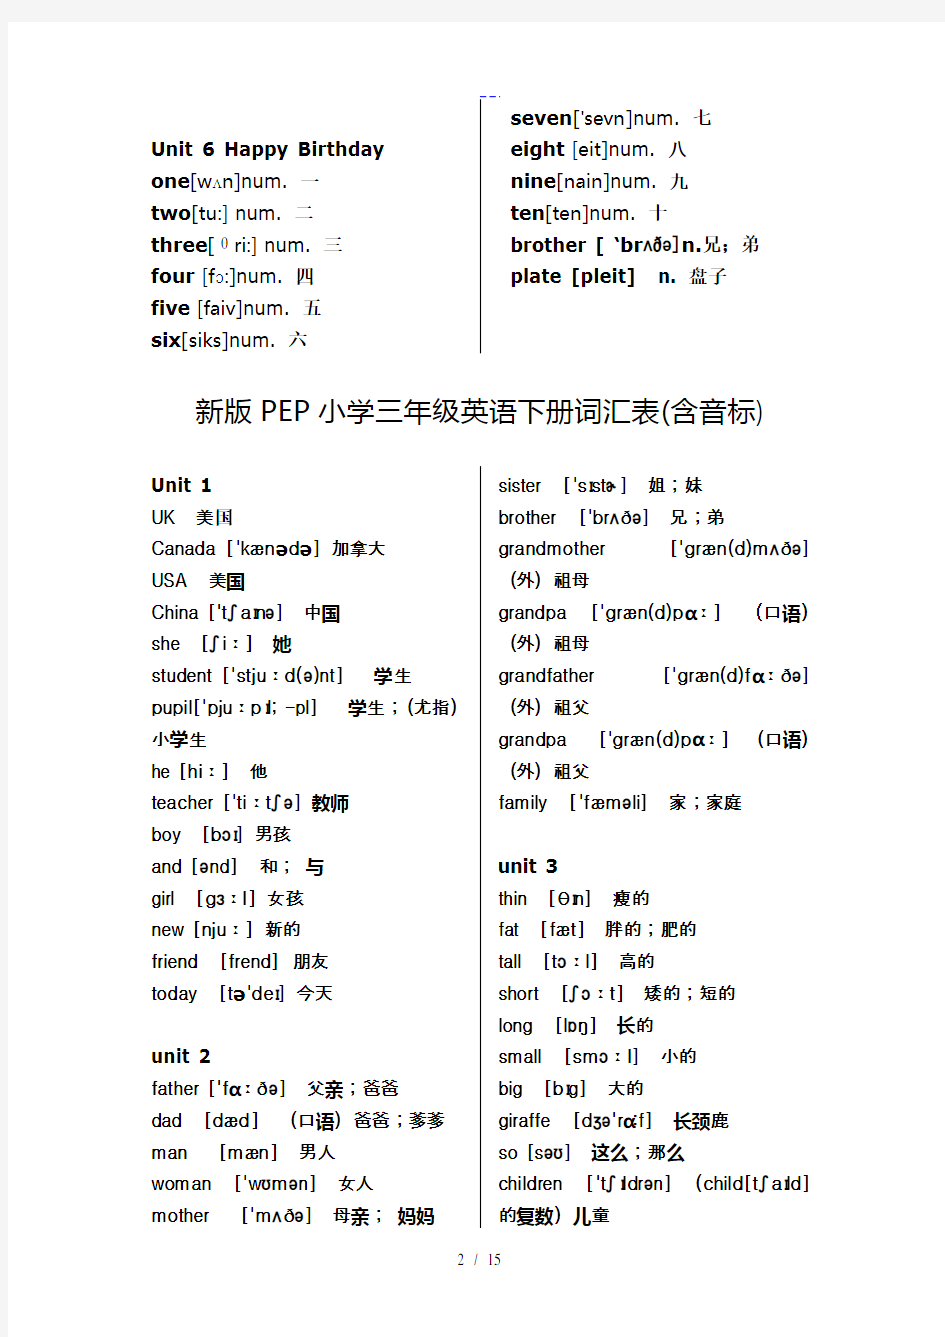 新版PEP小学英语单词表